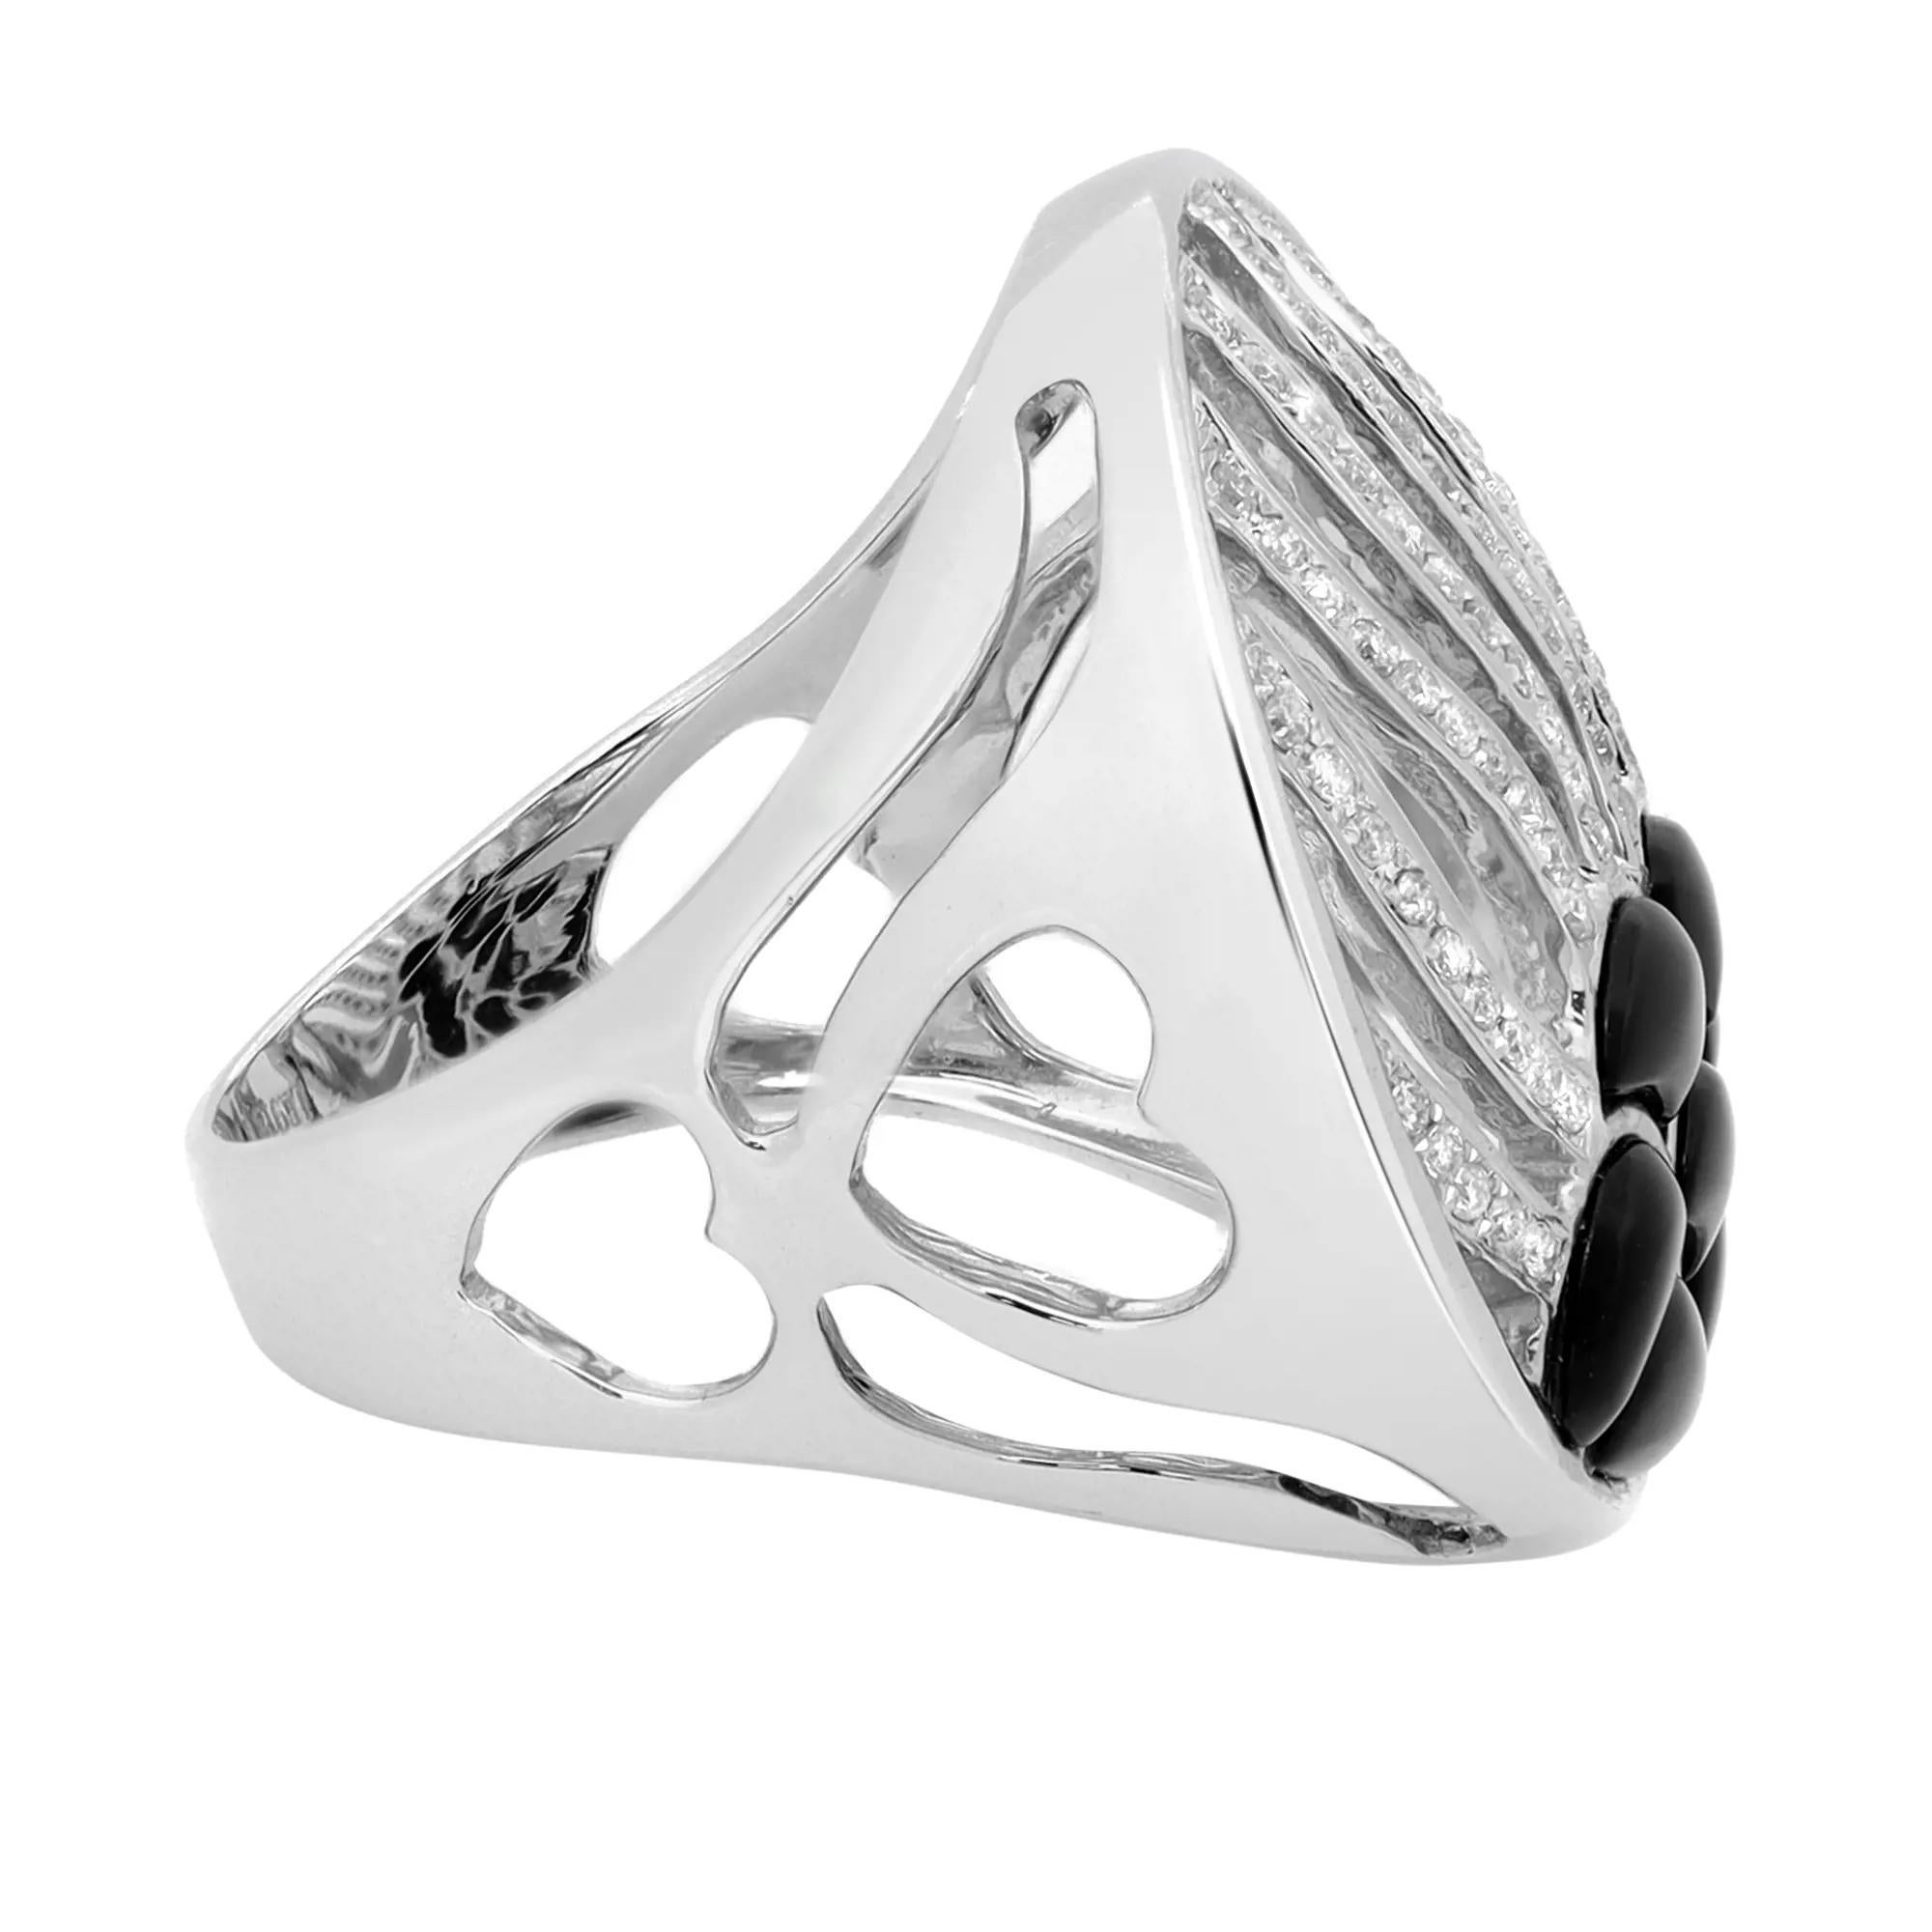 Dieser kühne und schöne Ring zeichnet sich durch gepflasterte, rund geschliffene Diamanten aus, die in einem Wellenmuster mit schwarzem Onyx gefasst sind. Gesamtgewicht der Diamanten: 0.36 Karat. Diamant Farbe I und SI1 Klarheit. Gefertigt aus